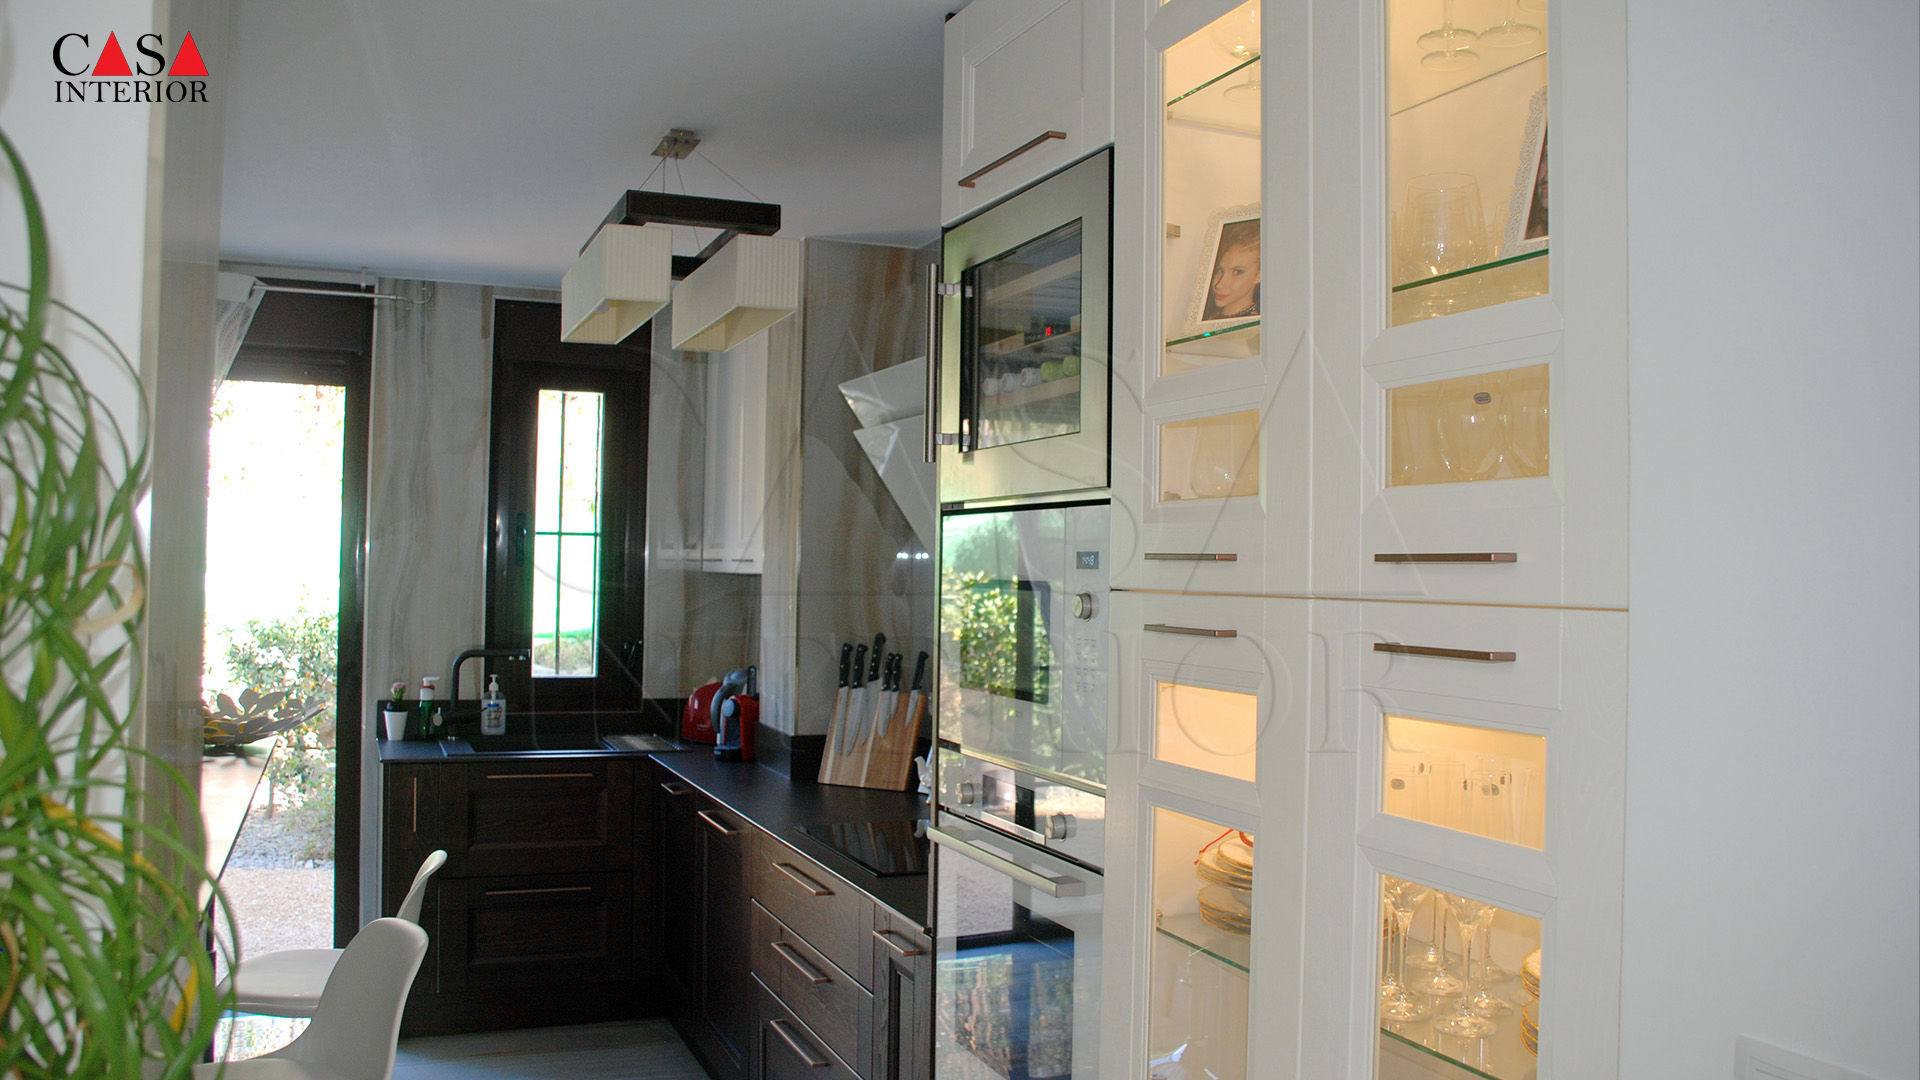 Vista de la columna con luces LED integradas Casa Interior Cocinas de estilo clásico cocina clásica, madera maciza, cocina blanca, bosch, encimera dekton, reforma completa